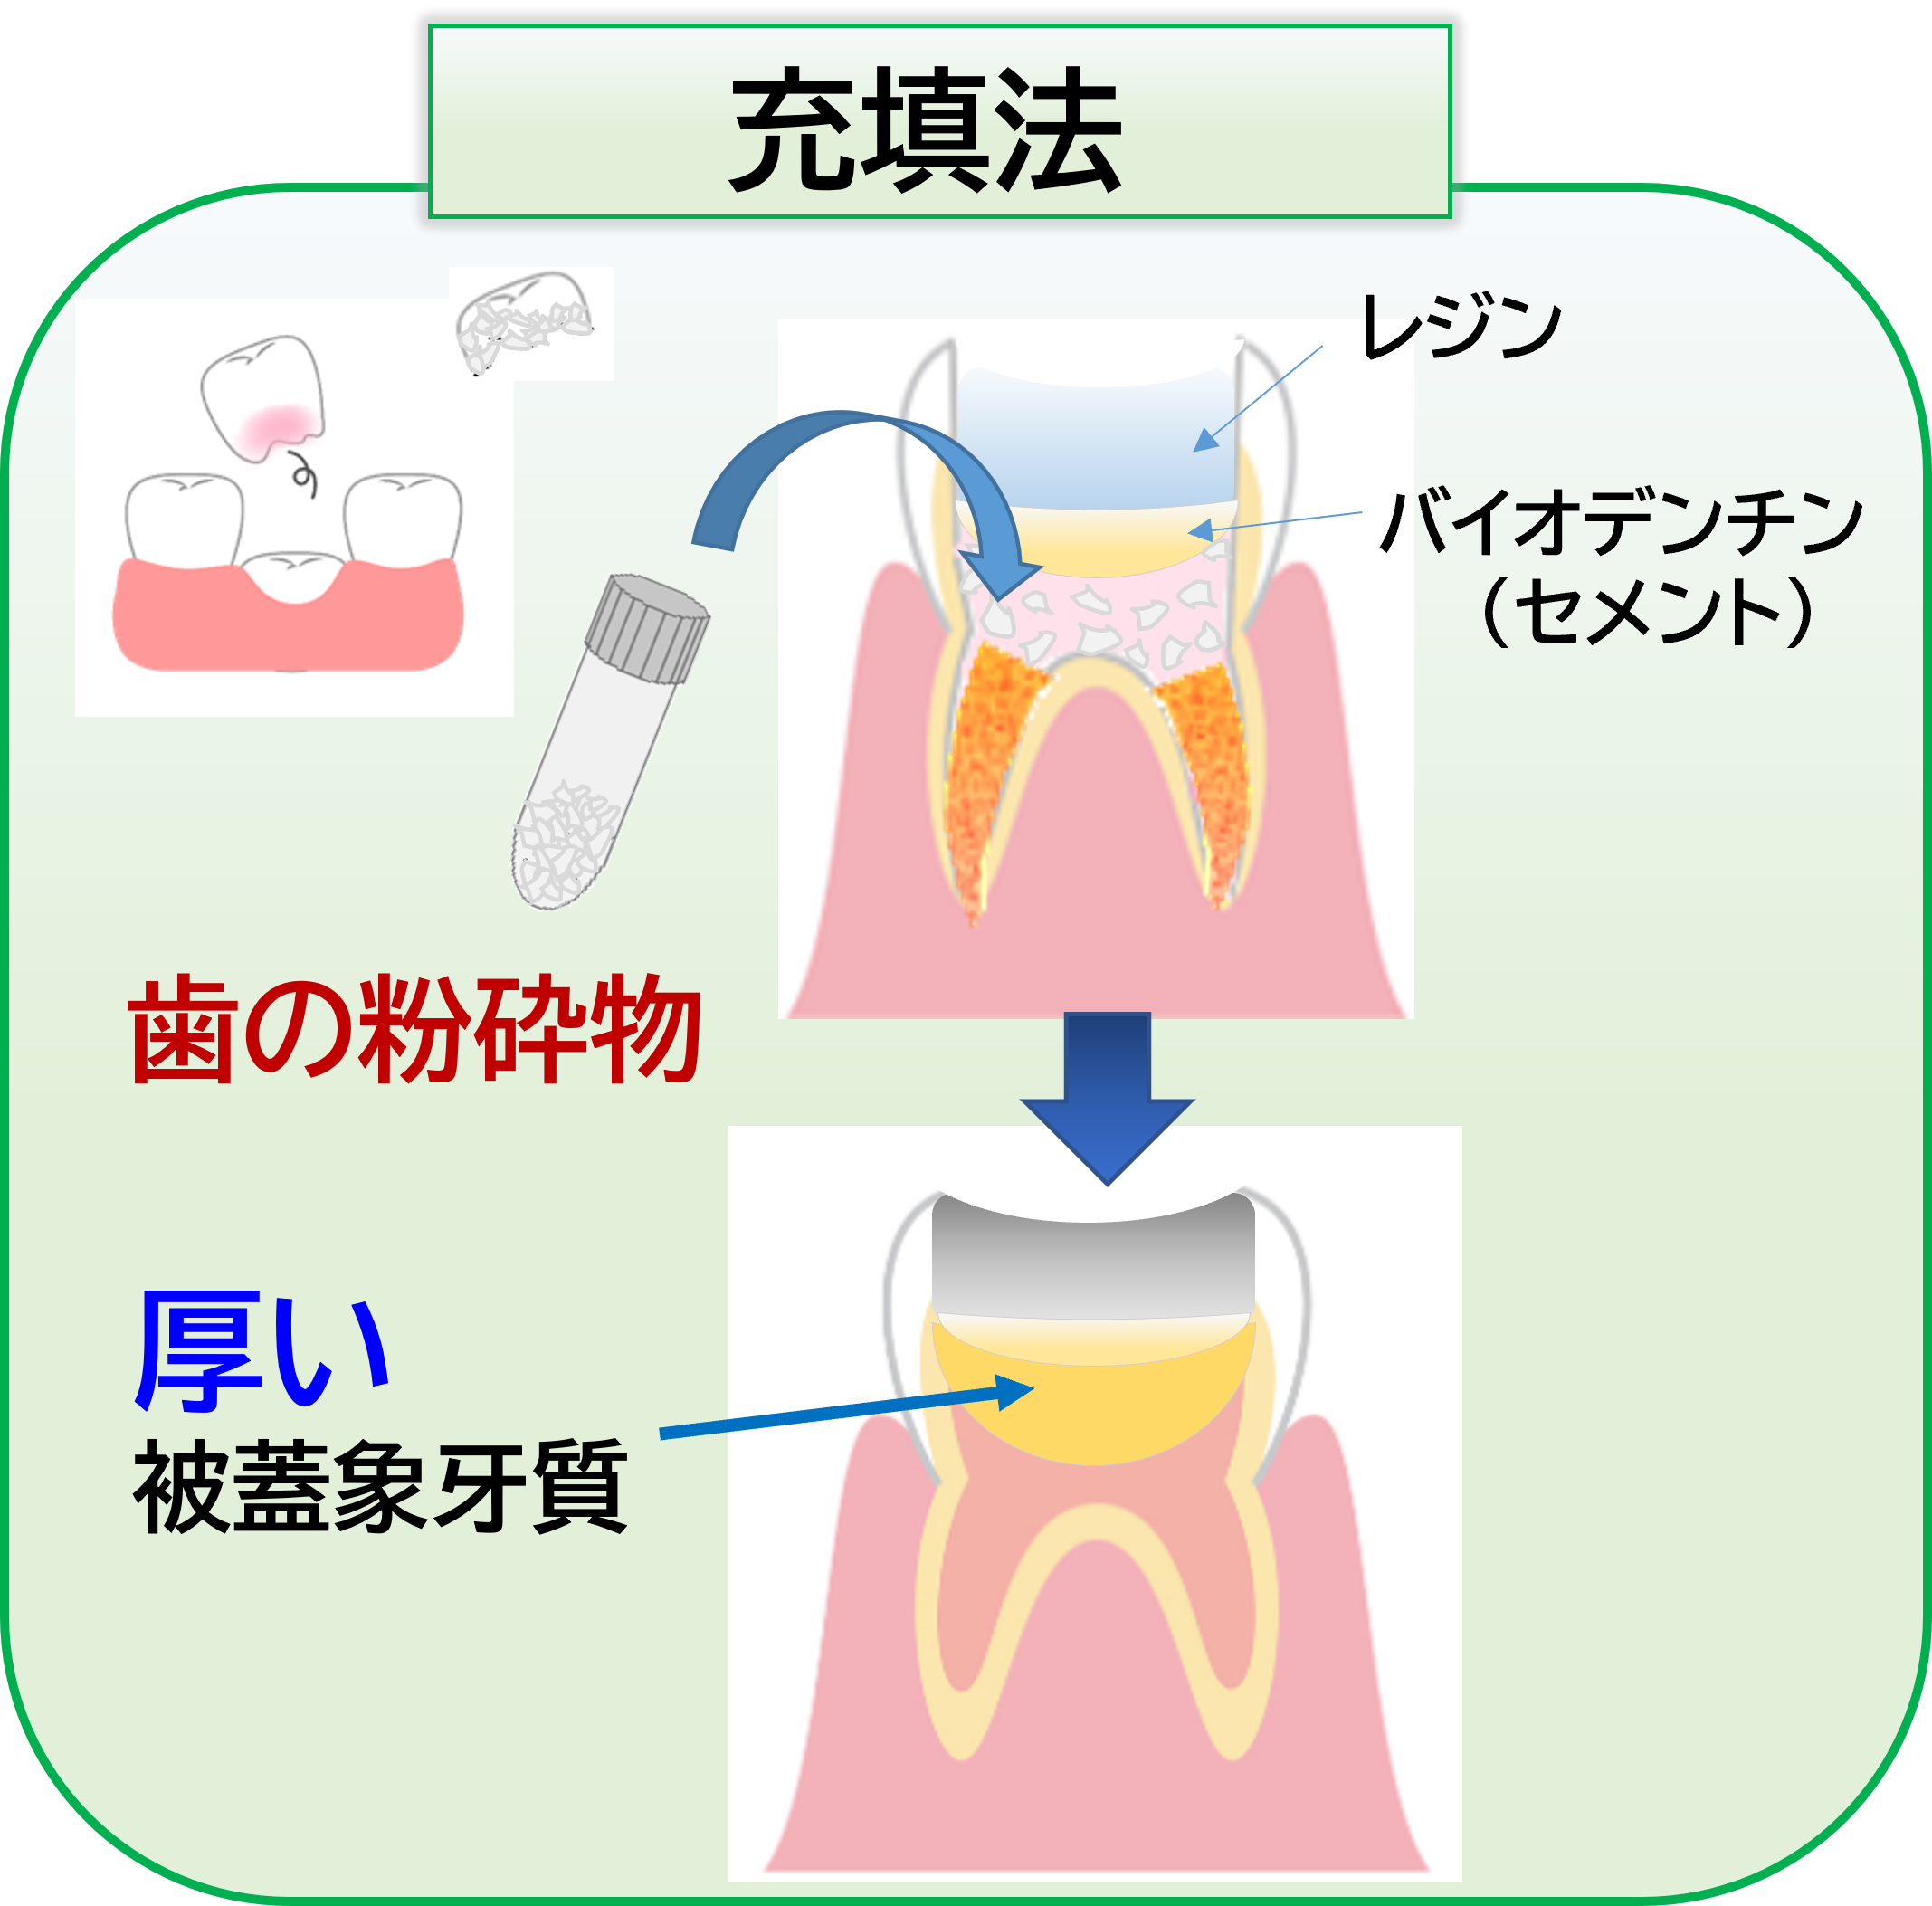 象牙質膜生成の治療プロセス